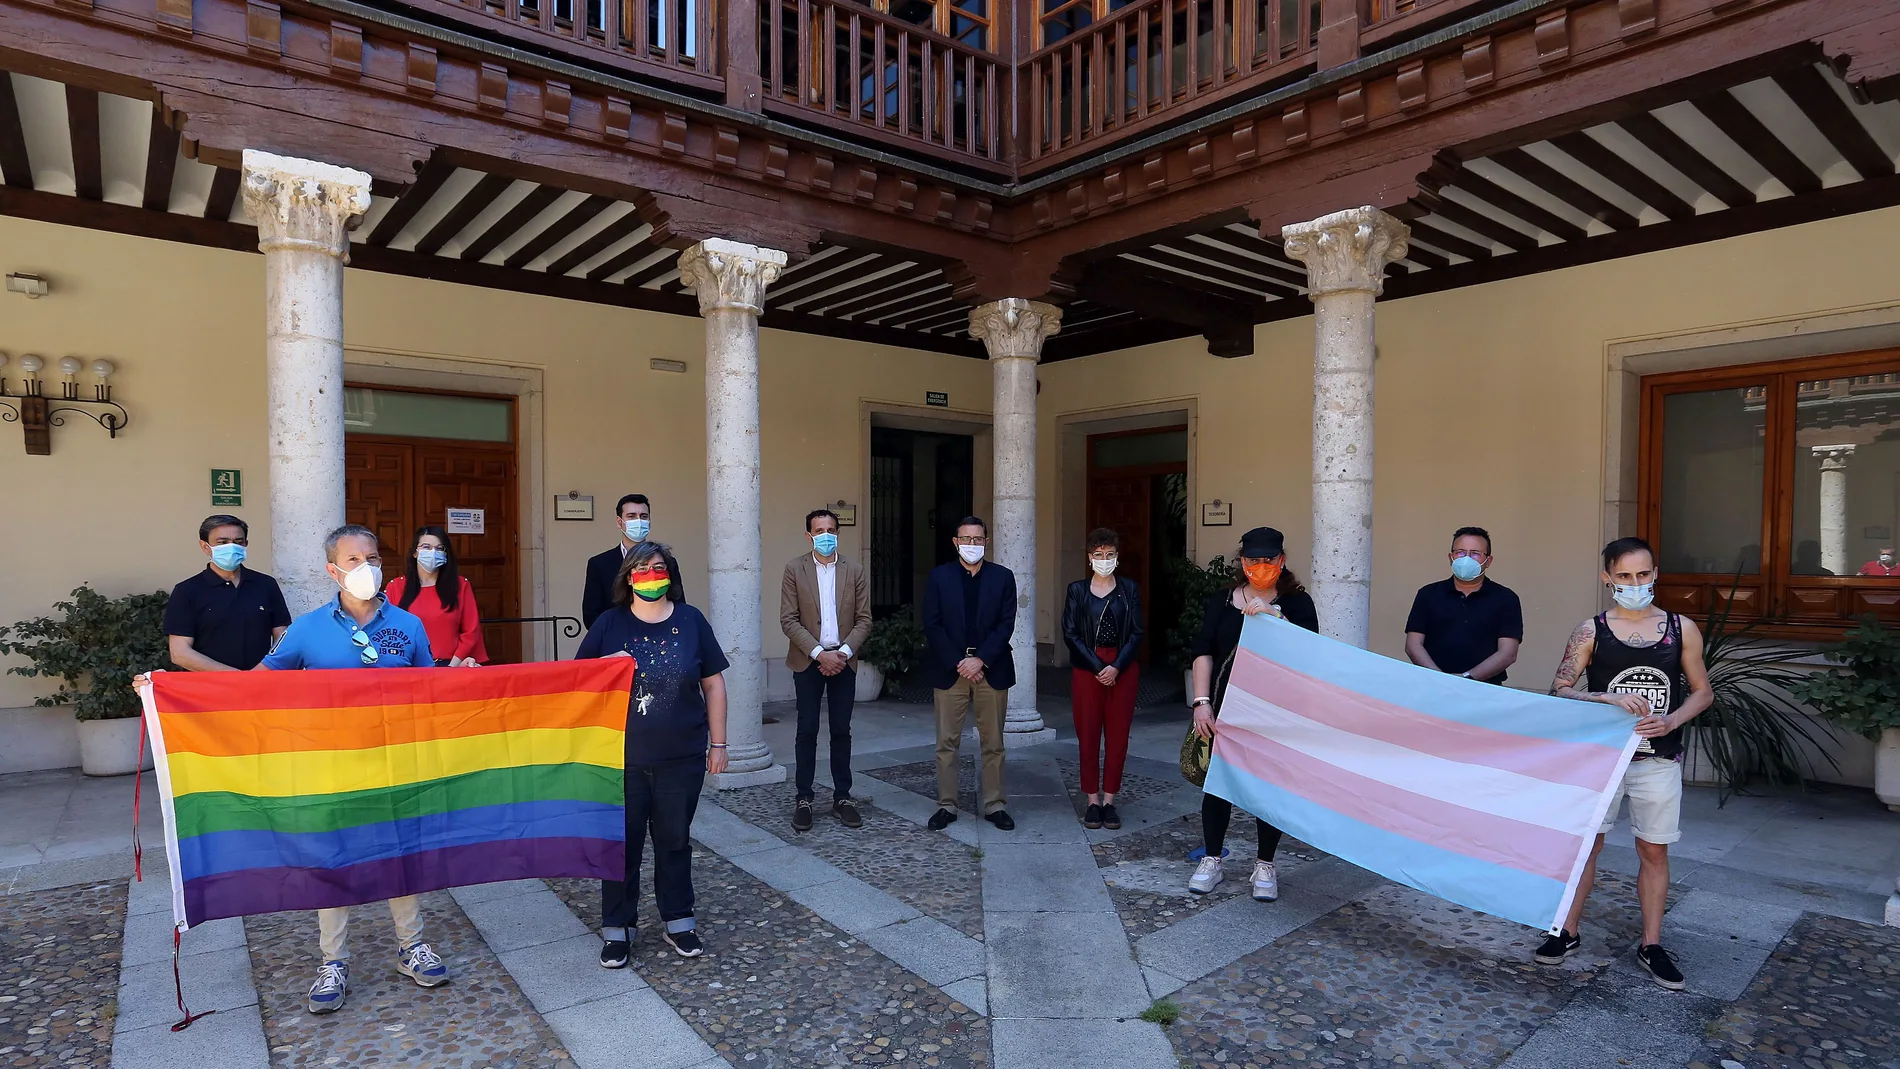 El presidente de la Diputación de Valladolid, Conrado Íscar, posa con la bandera arco iris junto a los portavoces de los grupos políticos y de representantes de la Fundación Triángulo, Valladolid Diversa y ATC Rainbow,